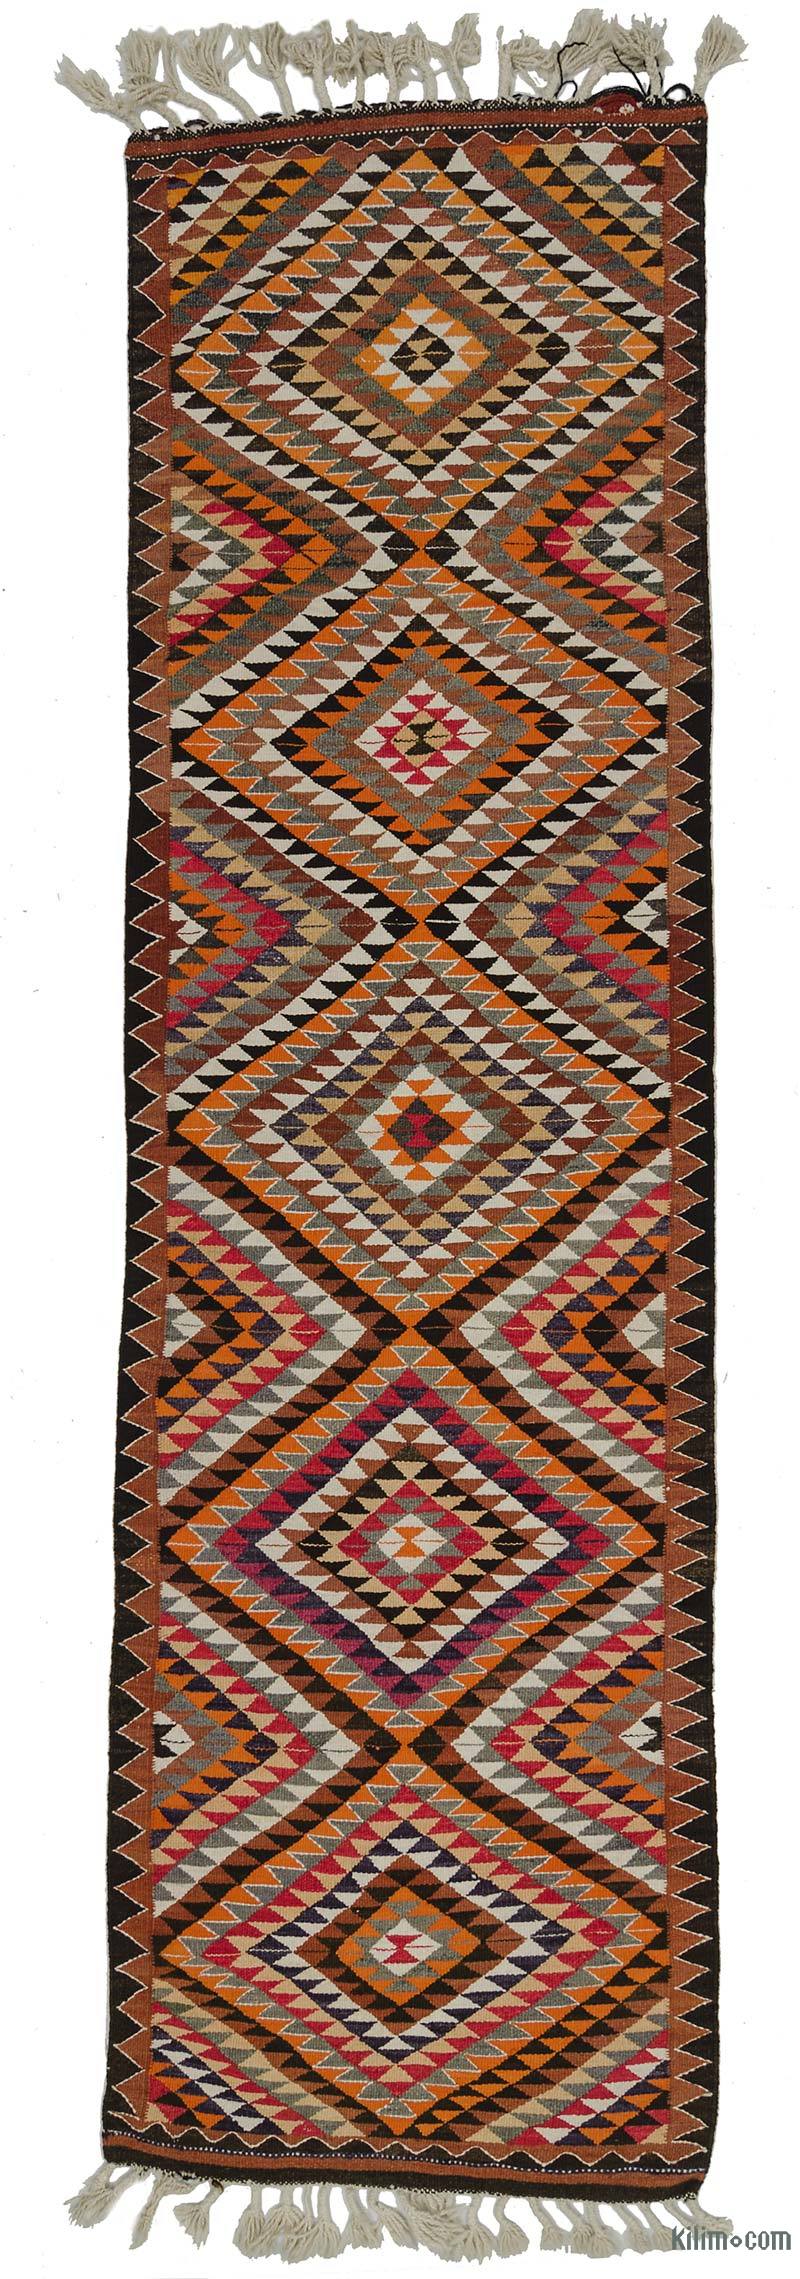 Multicolor Kilim Vintage Turco de Pasillo - 99 cm x 359 cm - K0028106